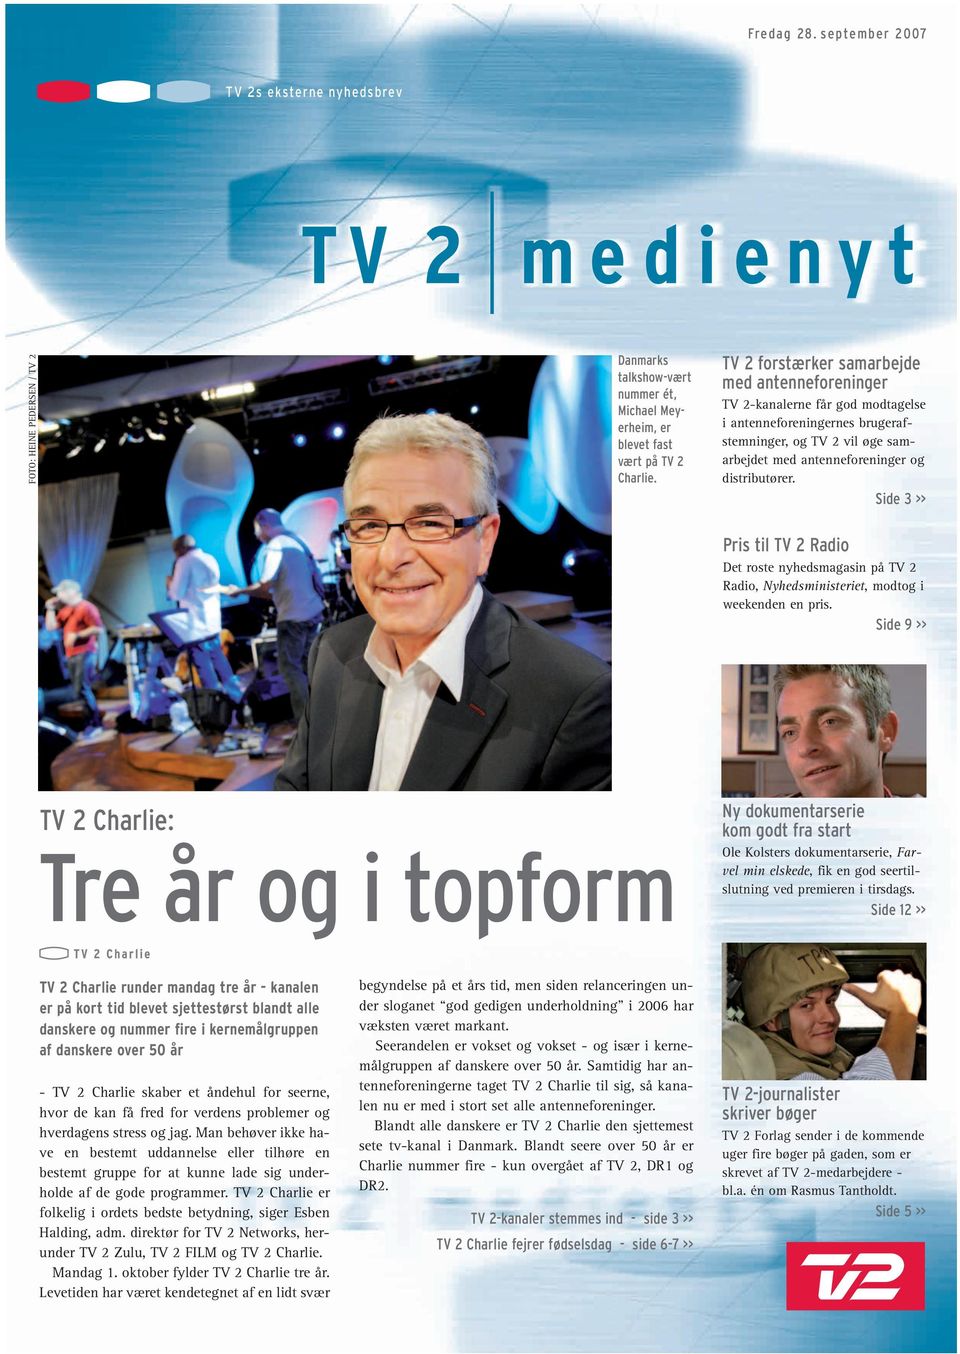 Side 3 >> Pris til TV 2 Radio Det roste nyhedsmagasin på TV 2 Radio, Nyhedsministeriet, modtog i weekenden en pris.